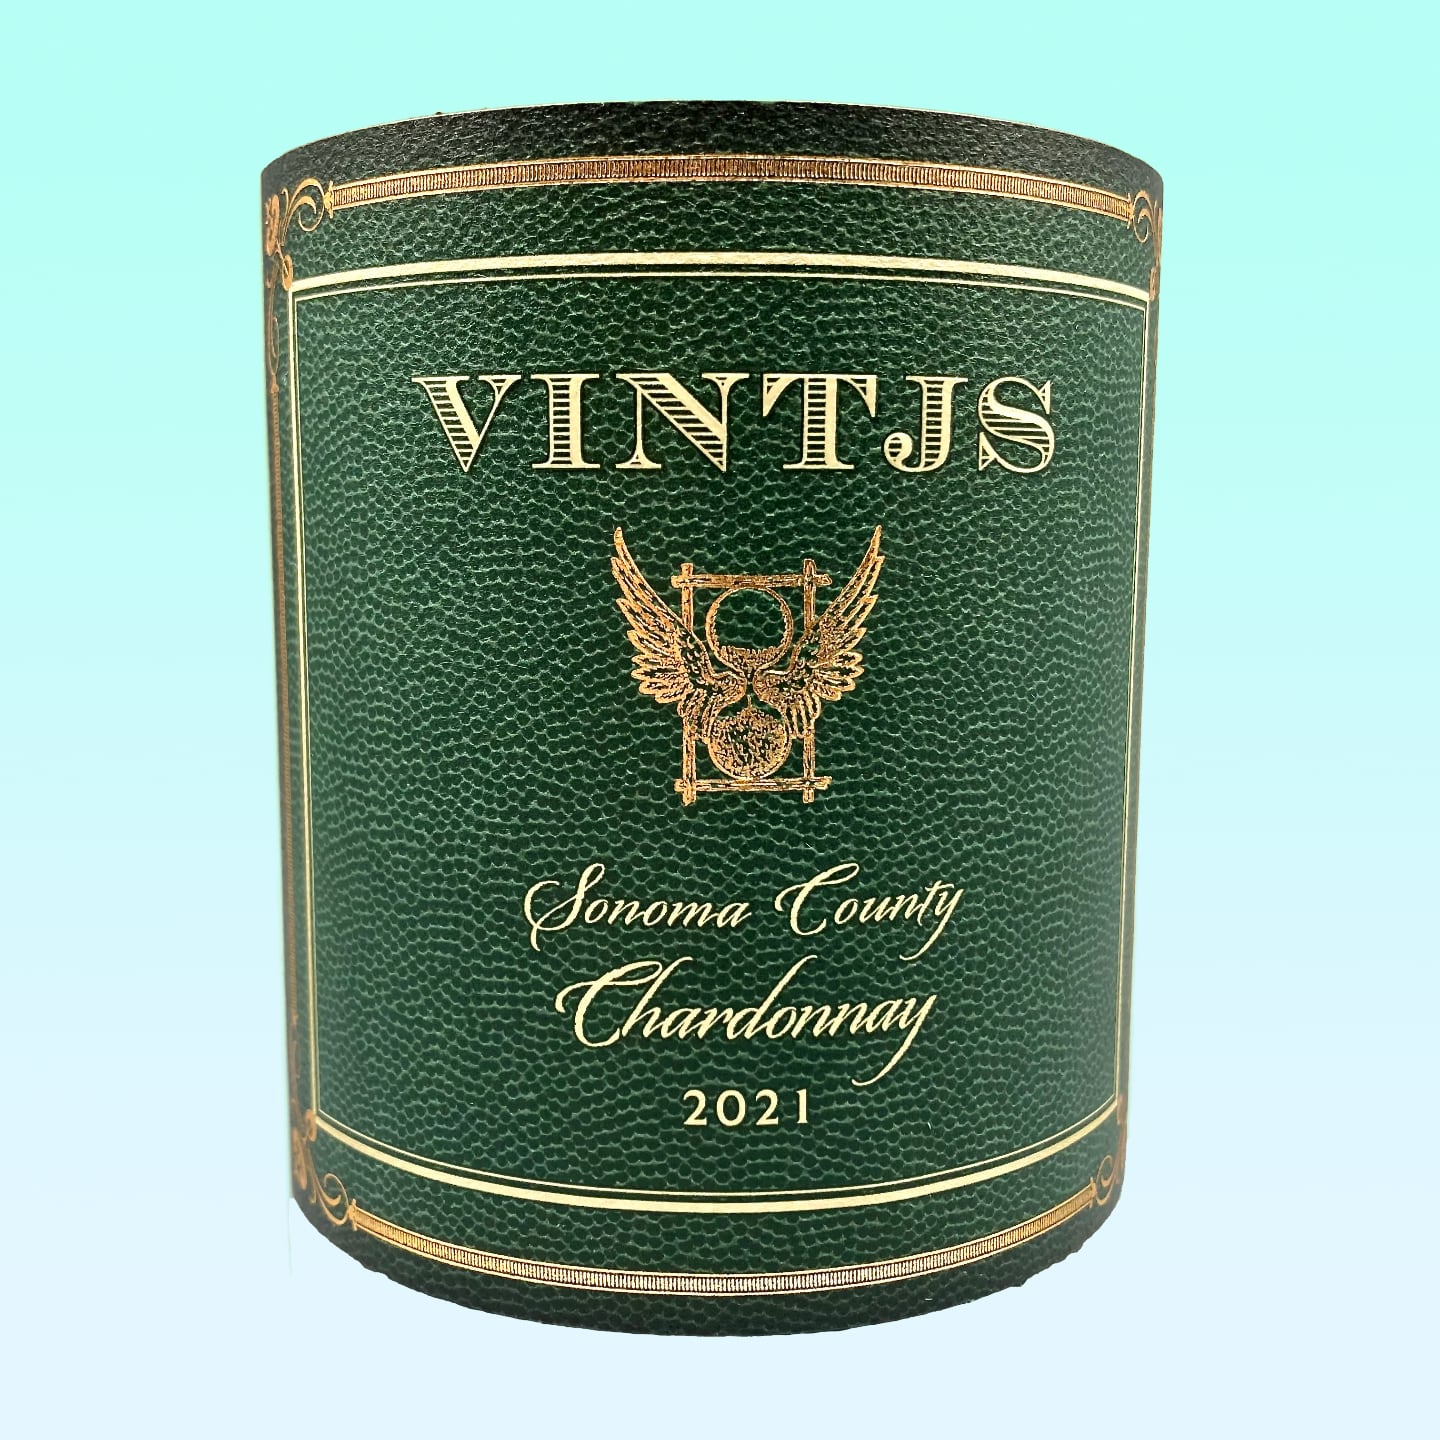 VINTJS Sonoma County Chardonnay 2021